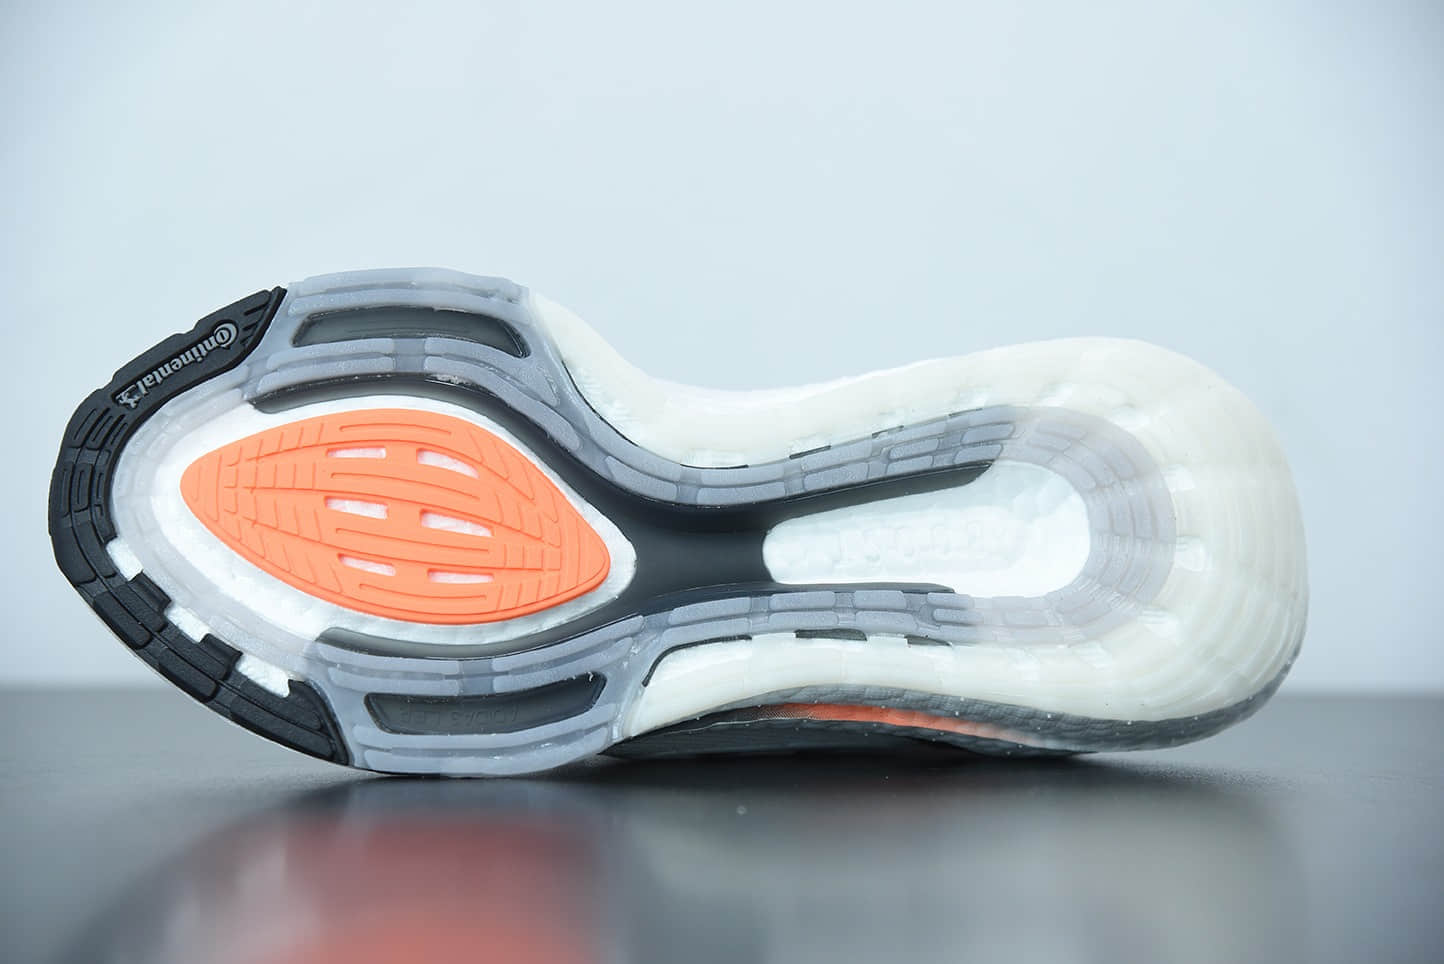 阿迪达斯 Adidas ultra boost 2021系列白橙配色袜套式针织鞋面休闲运动慢跑鞋纯原版本 货号：FY0375